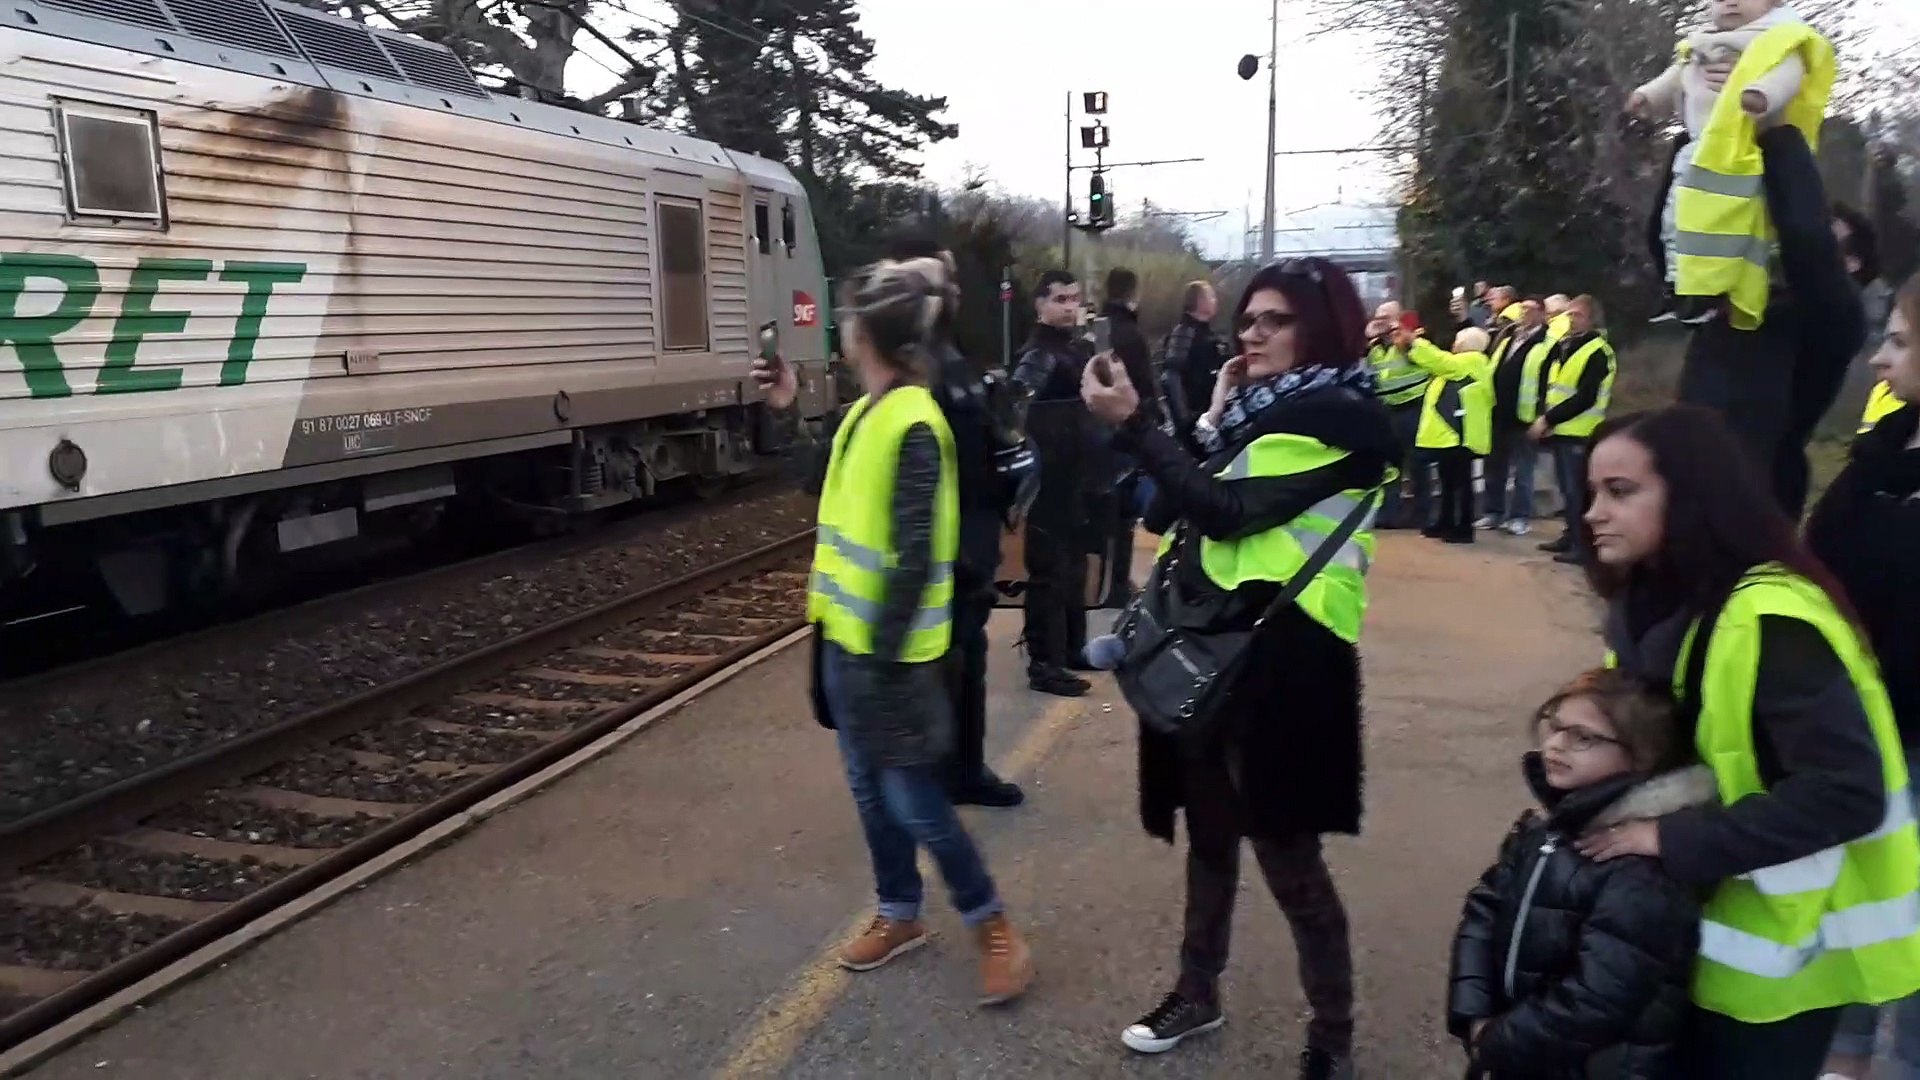 Blocage de la gare SNCF de Bollène par les Gilets jaunes - Vidéo Dailymotion